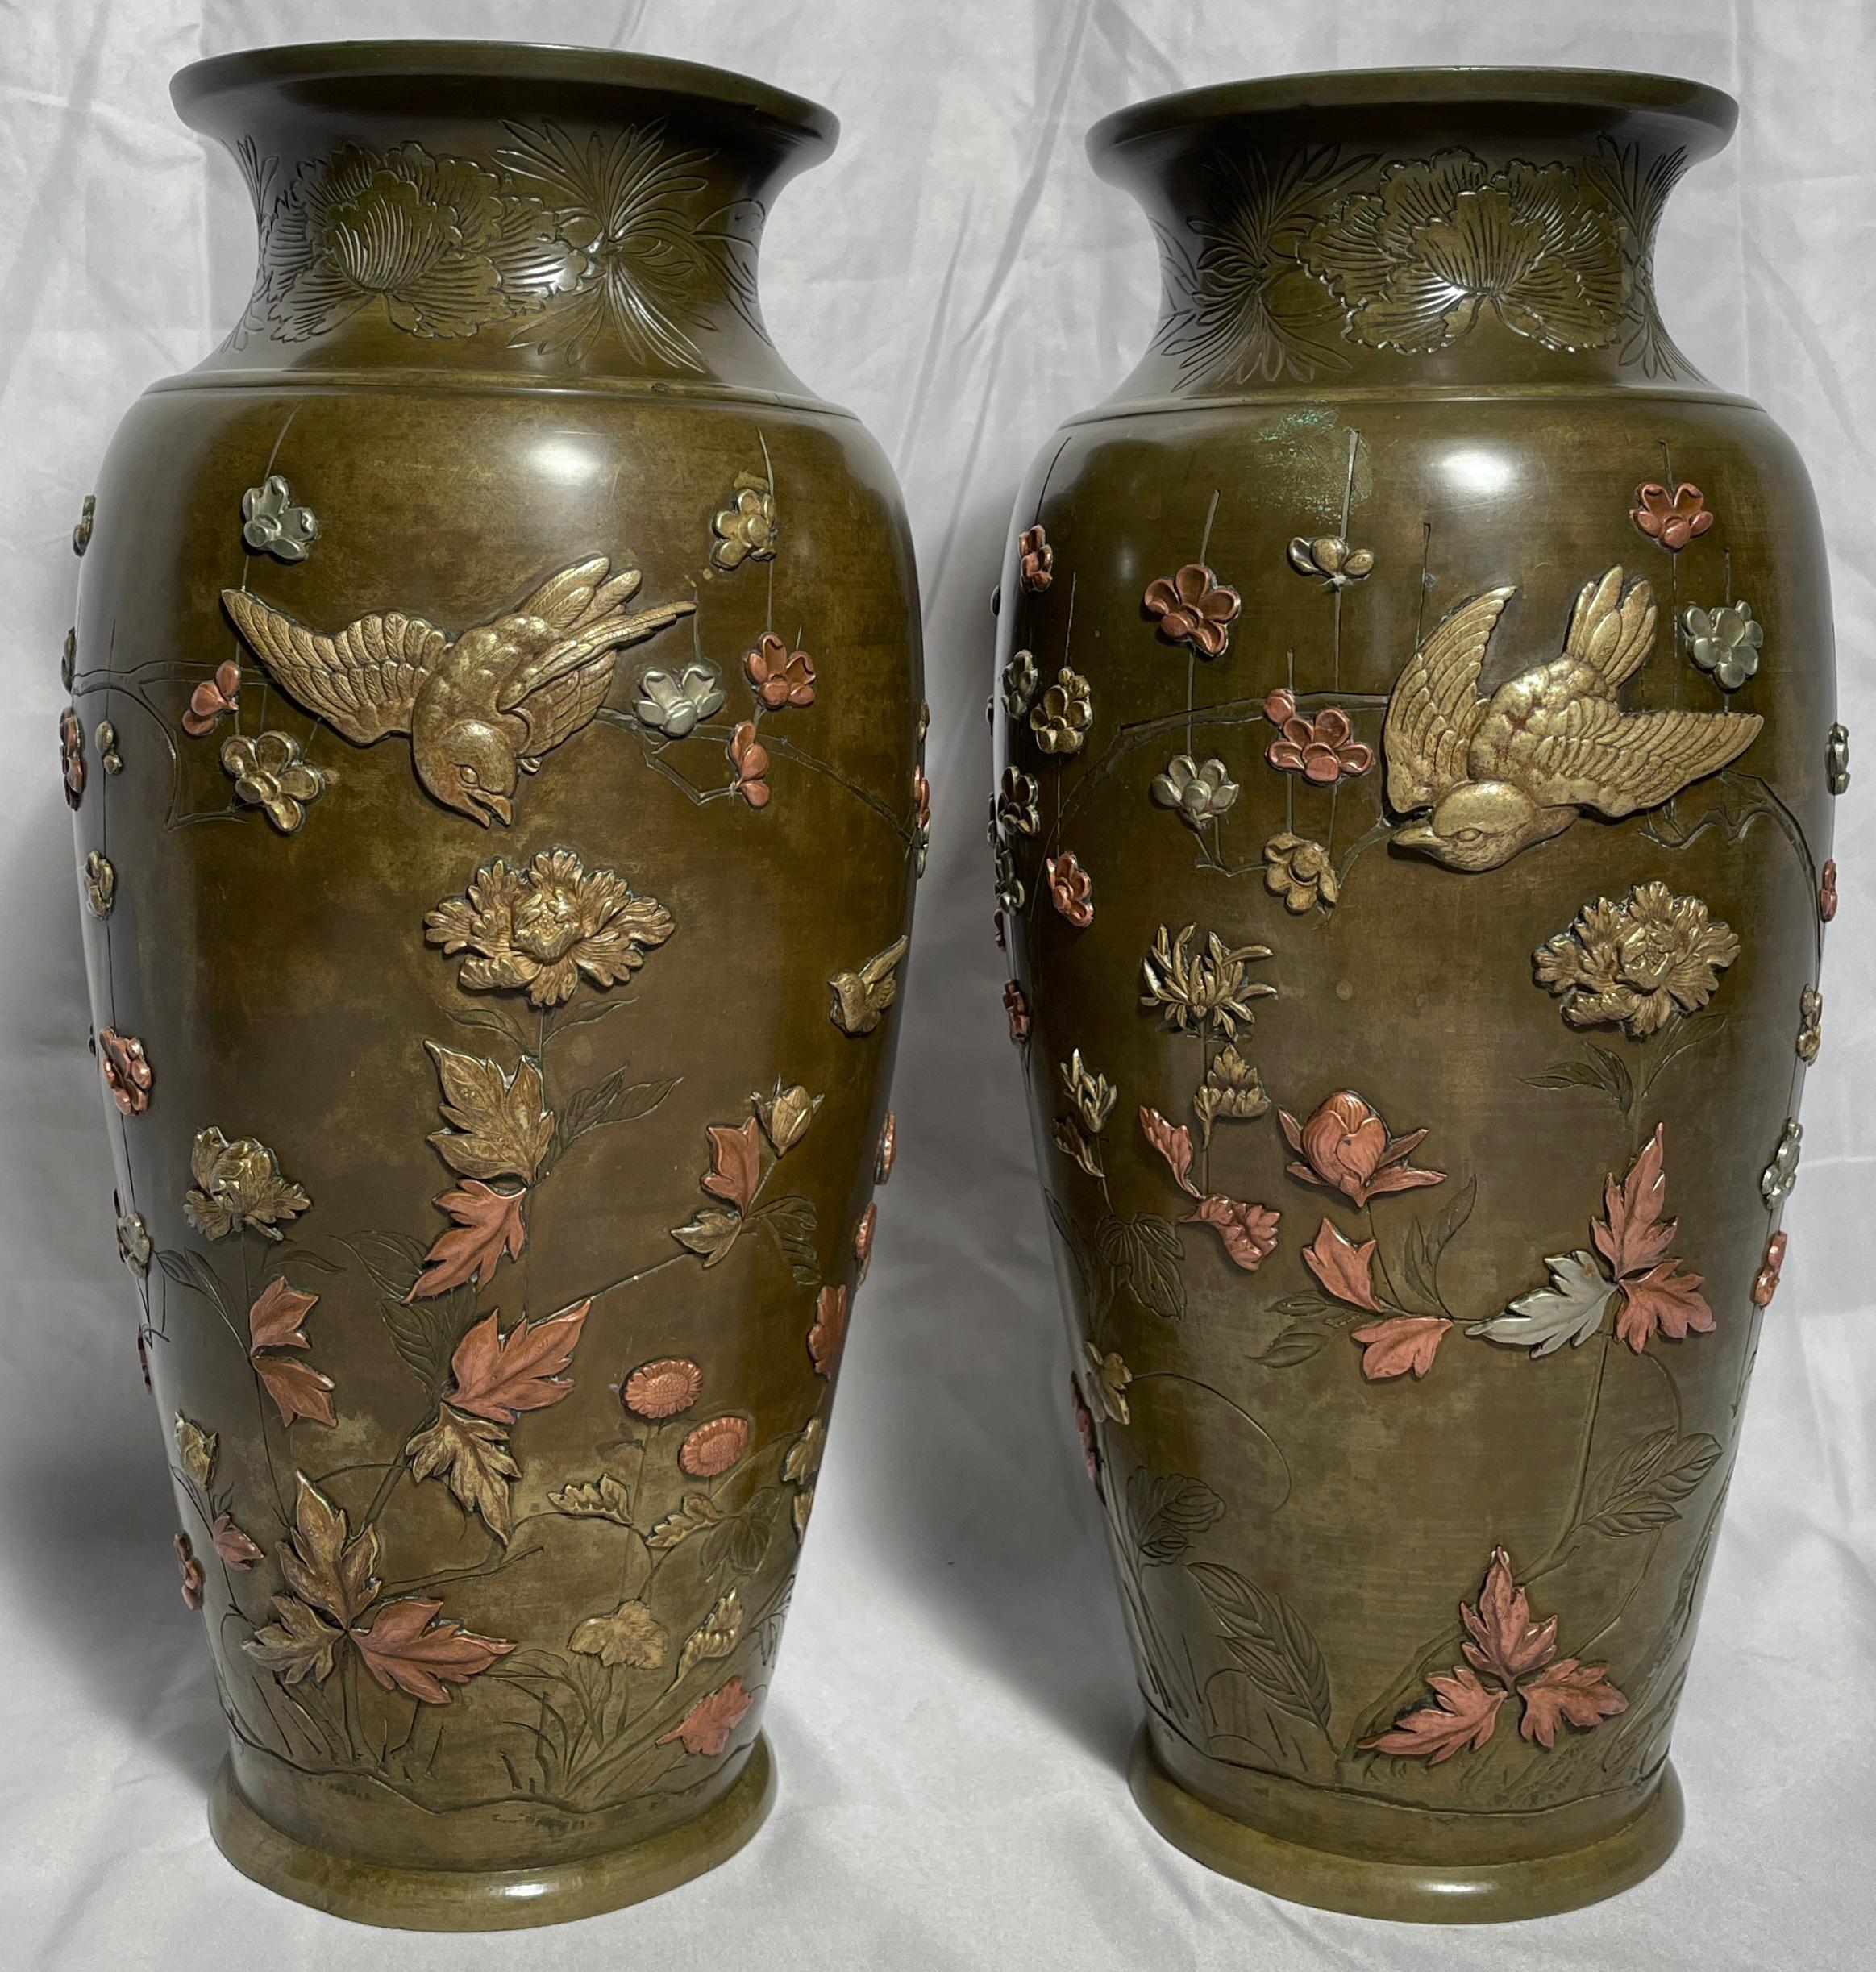 Pair antique Japanese bronze vases, circa 1875-1895.